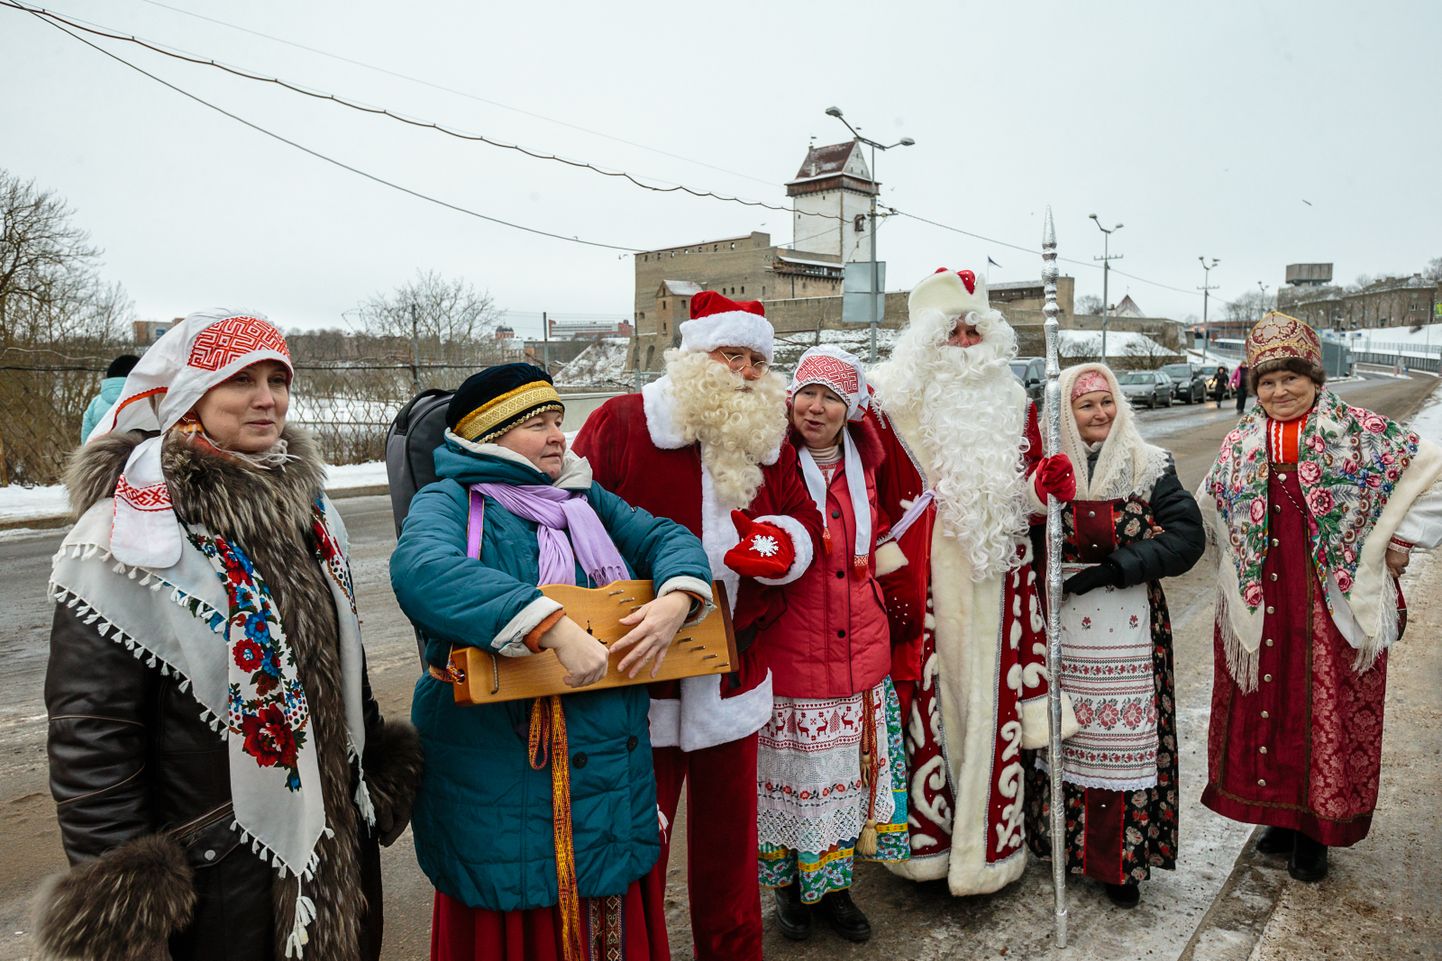 Jõuluvana ja Ded Morozi ning nende kaaskond kohtusid esmaspäeval Narva jõe sillal. ILJA SMIRNOV